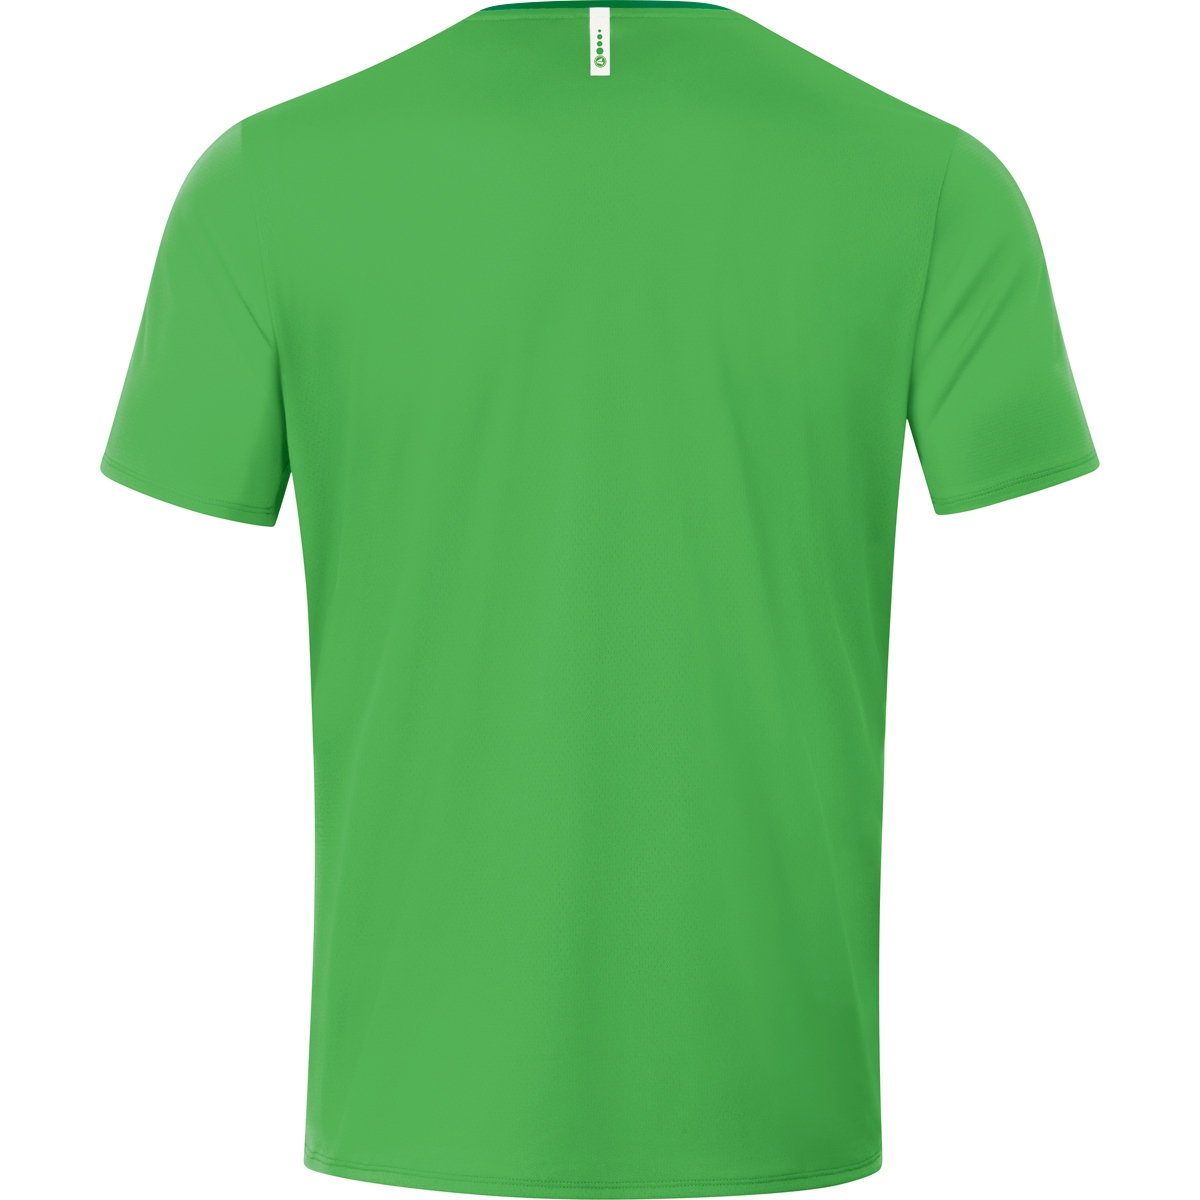 Champ 4XL, 6120 Herren, green/sportgrün, JAKO T-Shirt 2.0 soft Gr.